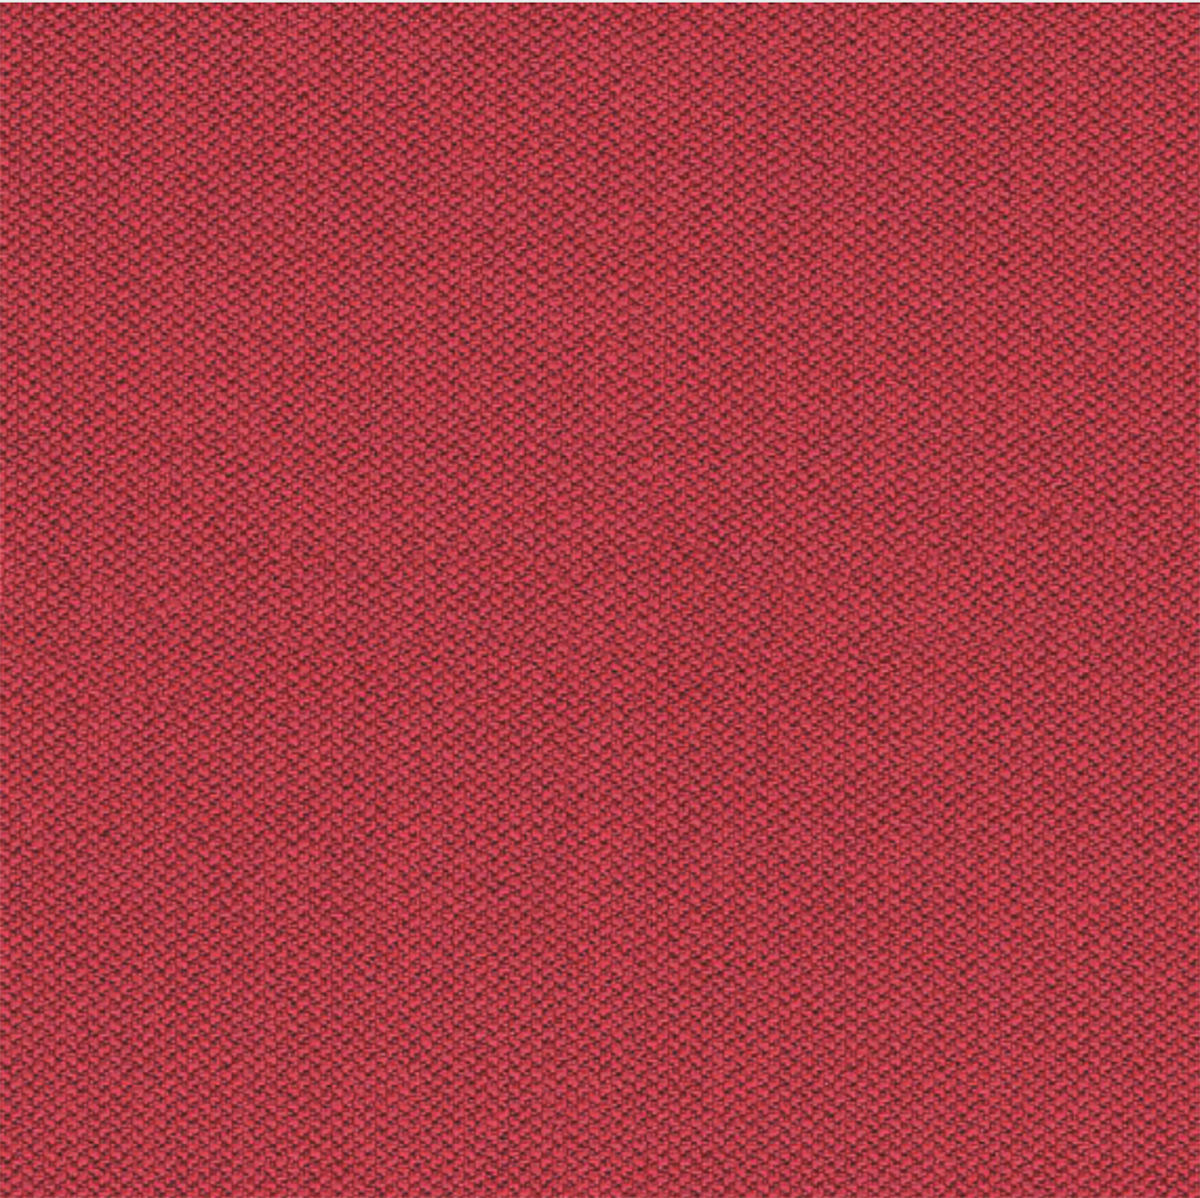 CAMIRA ERA FABRIC - RED Fabric